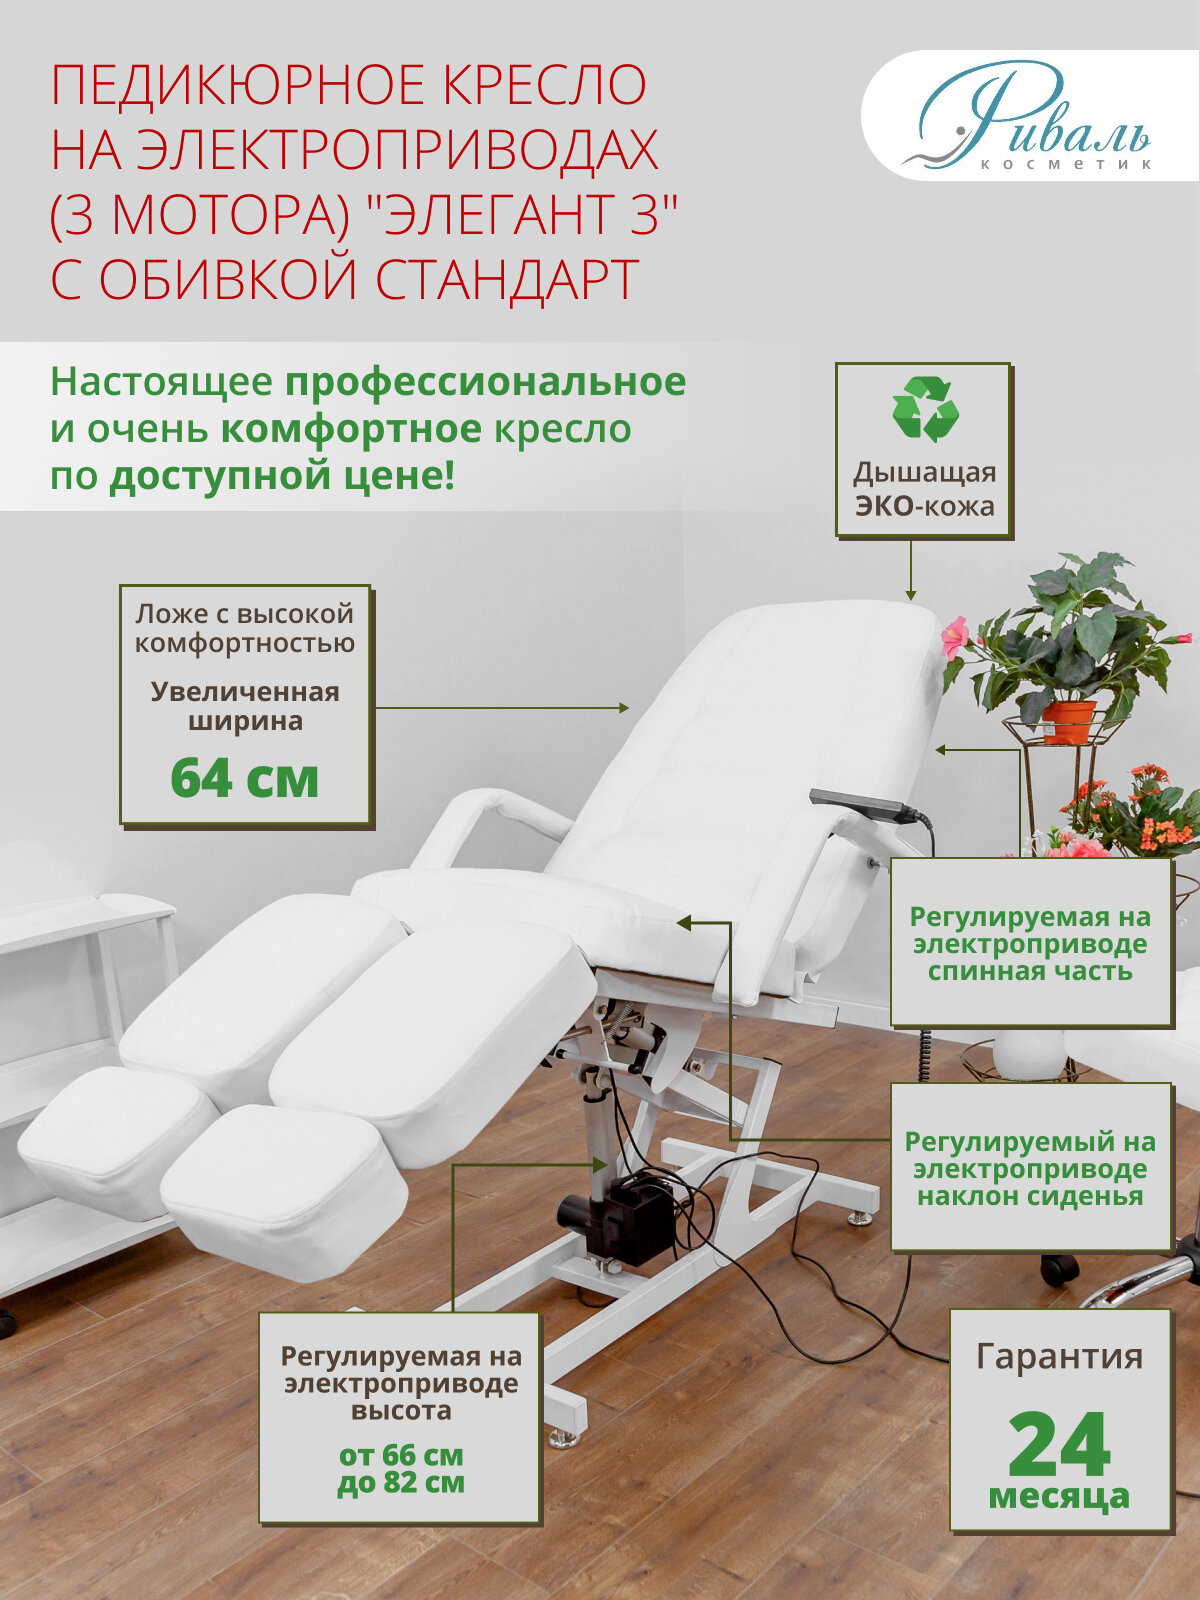 Педикюрное кресло трехмоторное "Элегант-3", обивка стандарт белая, риваль/кресло для педикюра, для тату